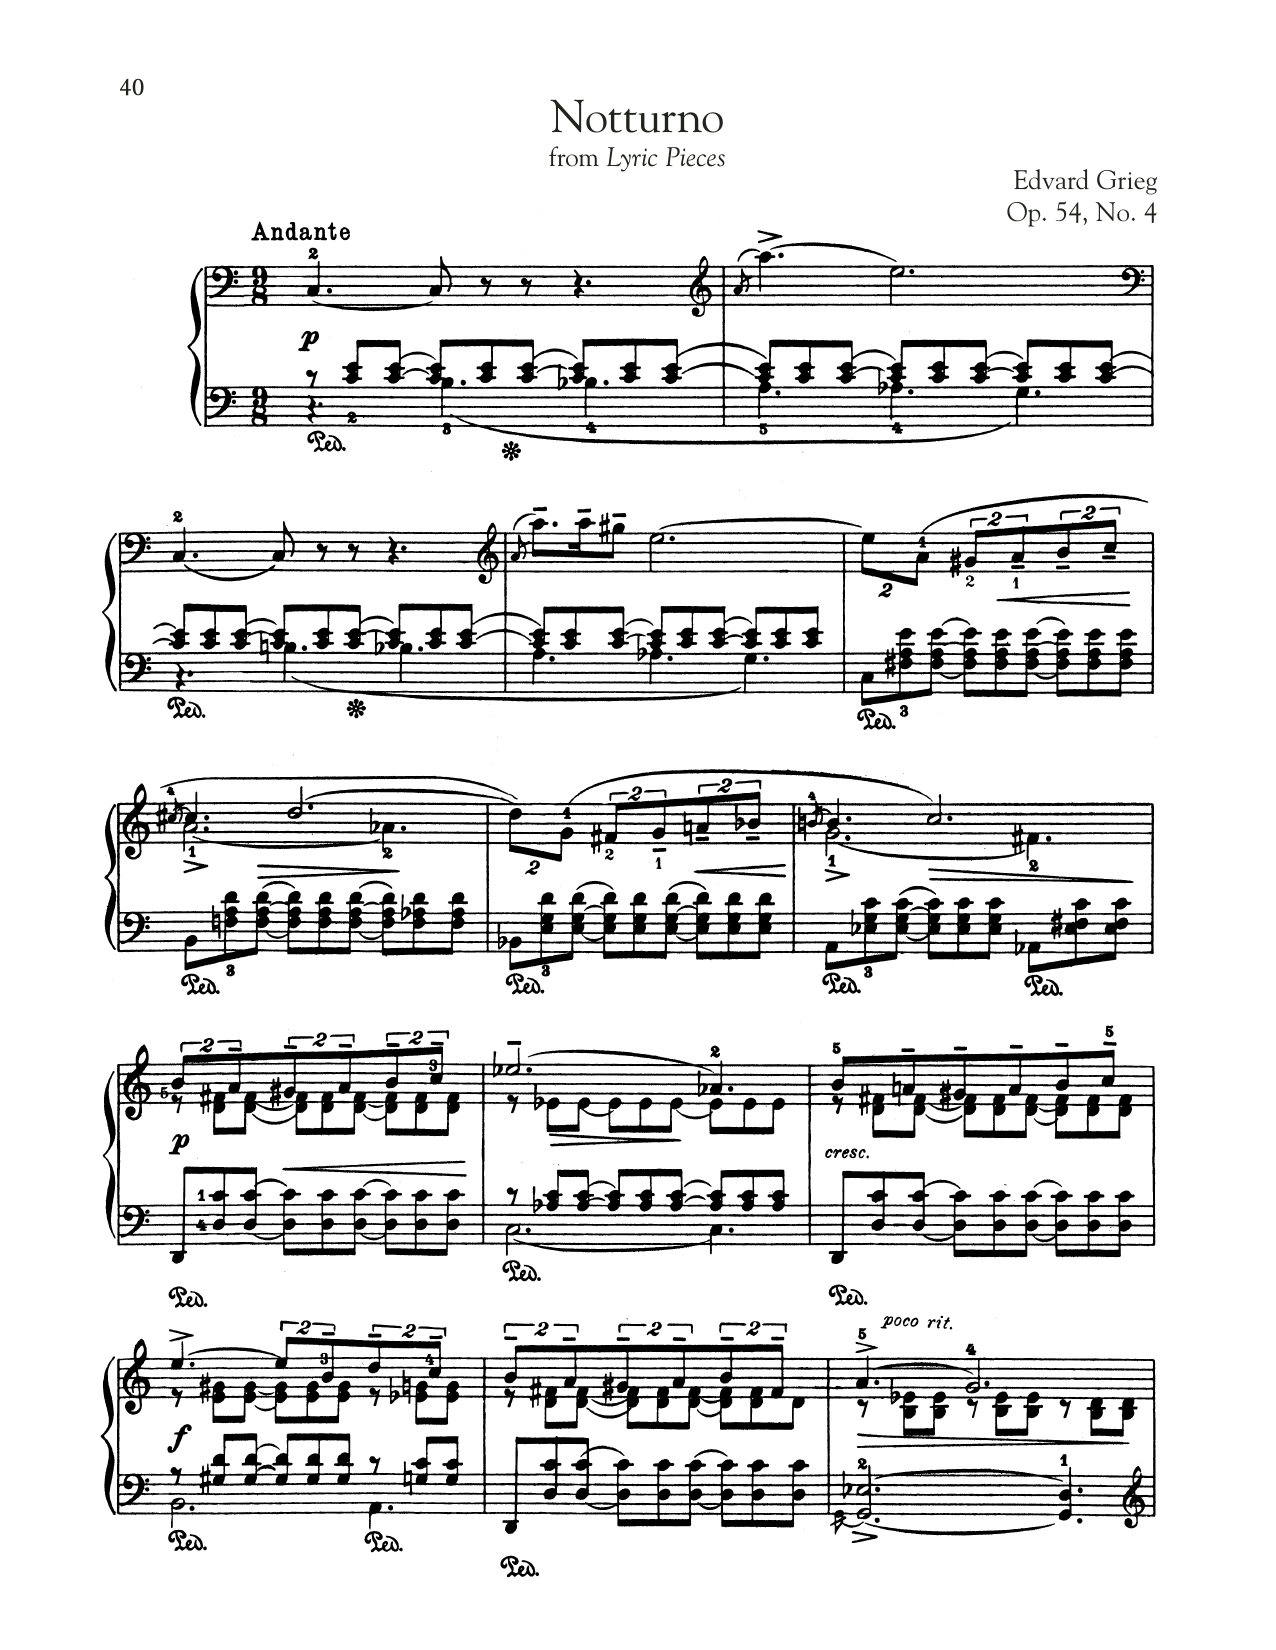 Notturno, Op. 54, No. 4 sheet music